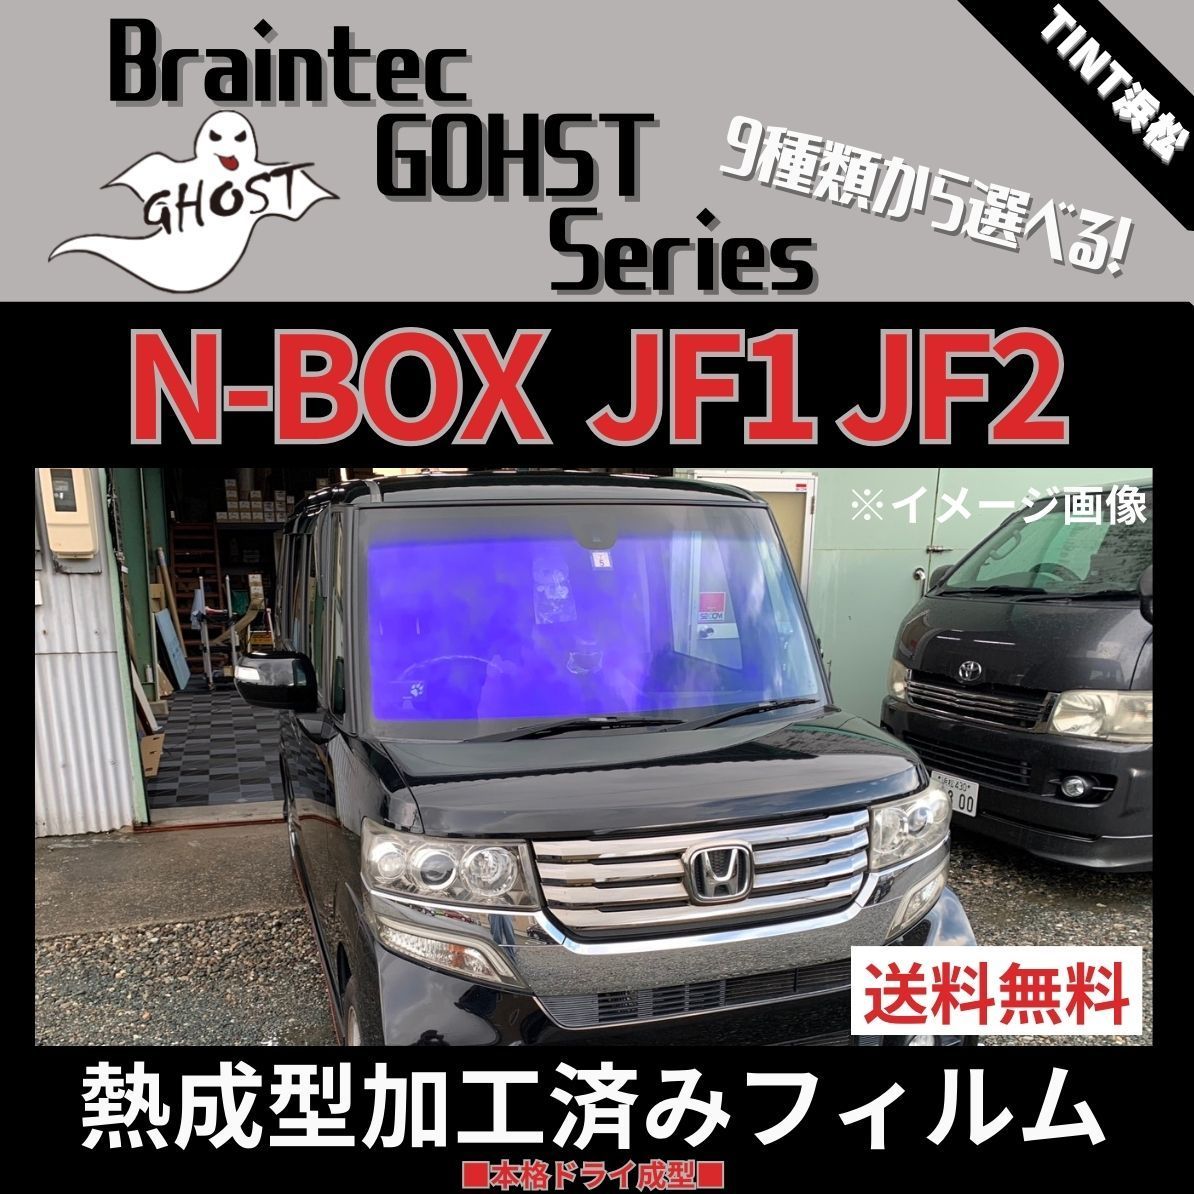 カーフィルム カット済み フロント5面セット N-BOX JF1 JF2 【熱成型 